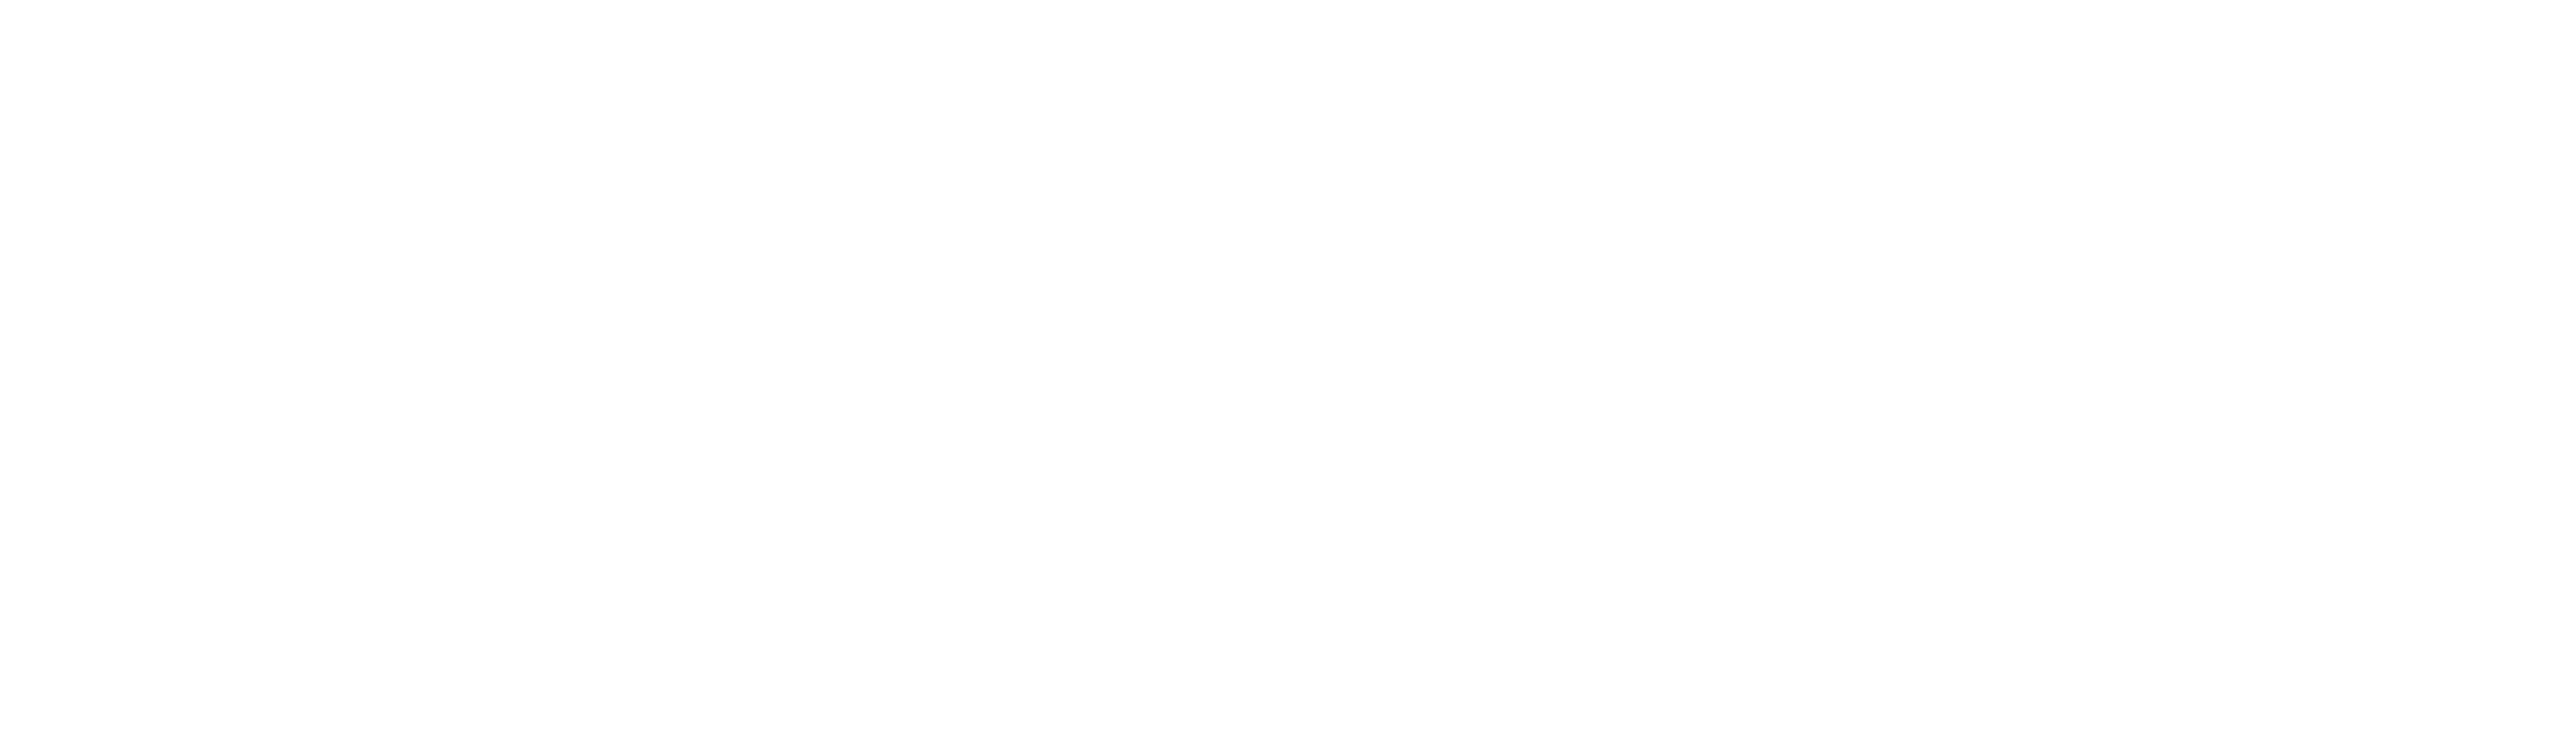 Tecmilenio-Logo-Mobile